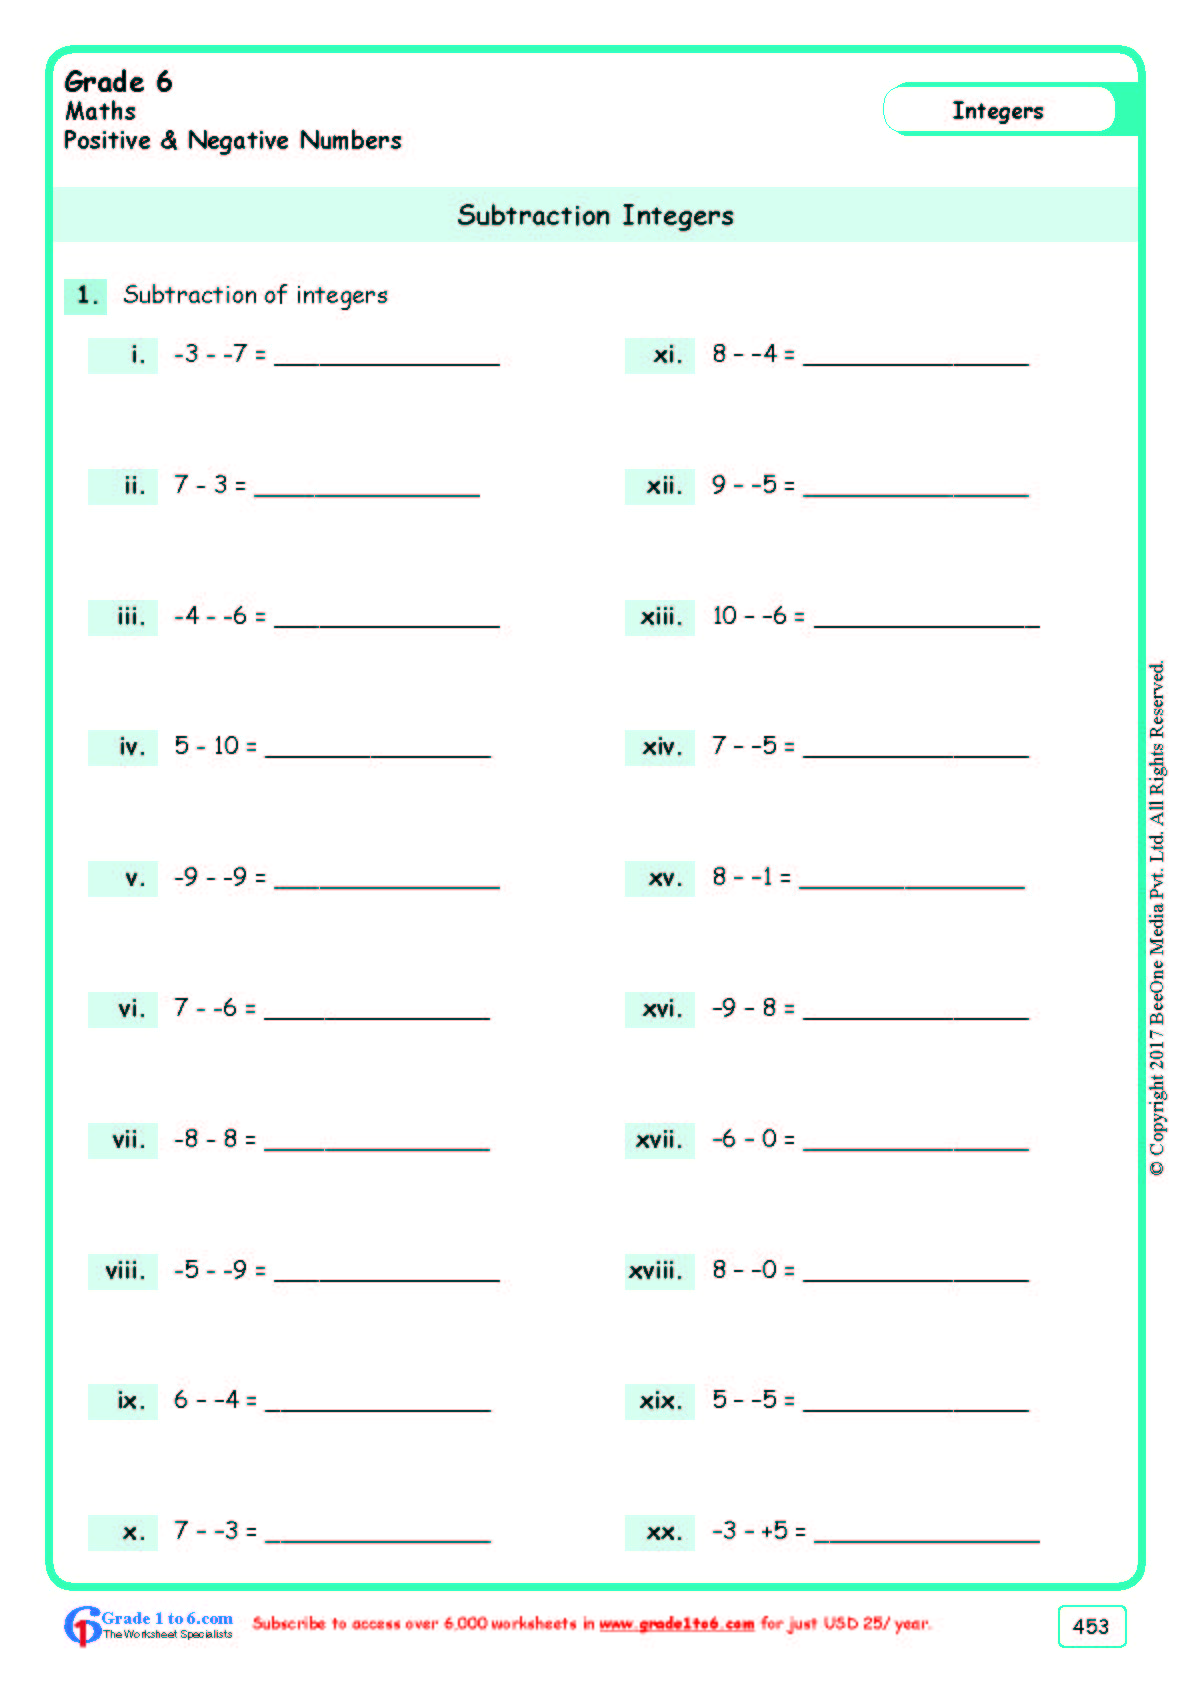 subtracting-integers-worksheets-grade-6-www-grade1to6